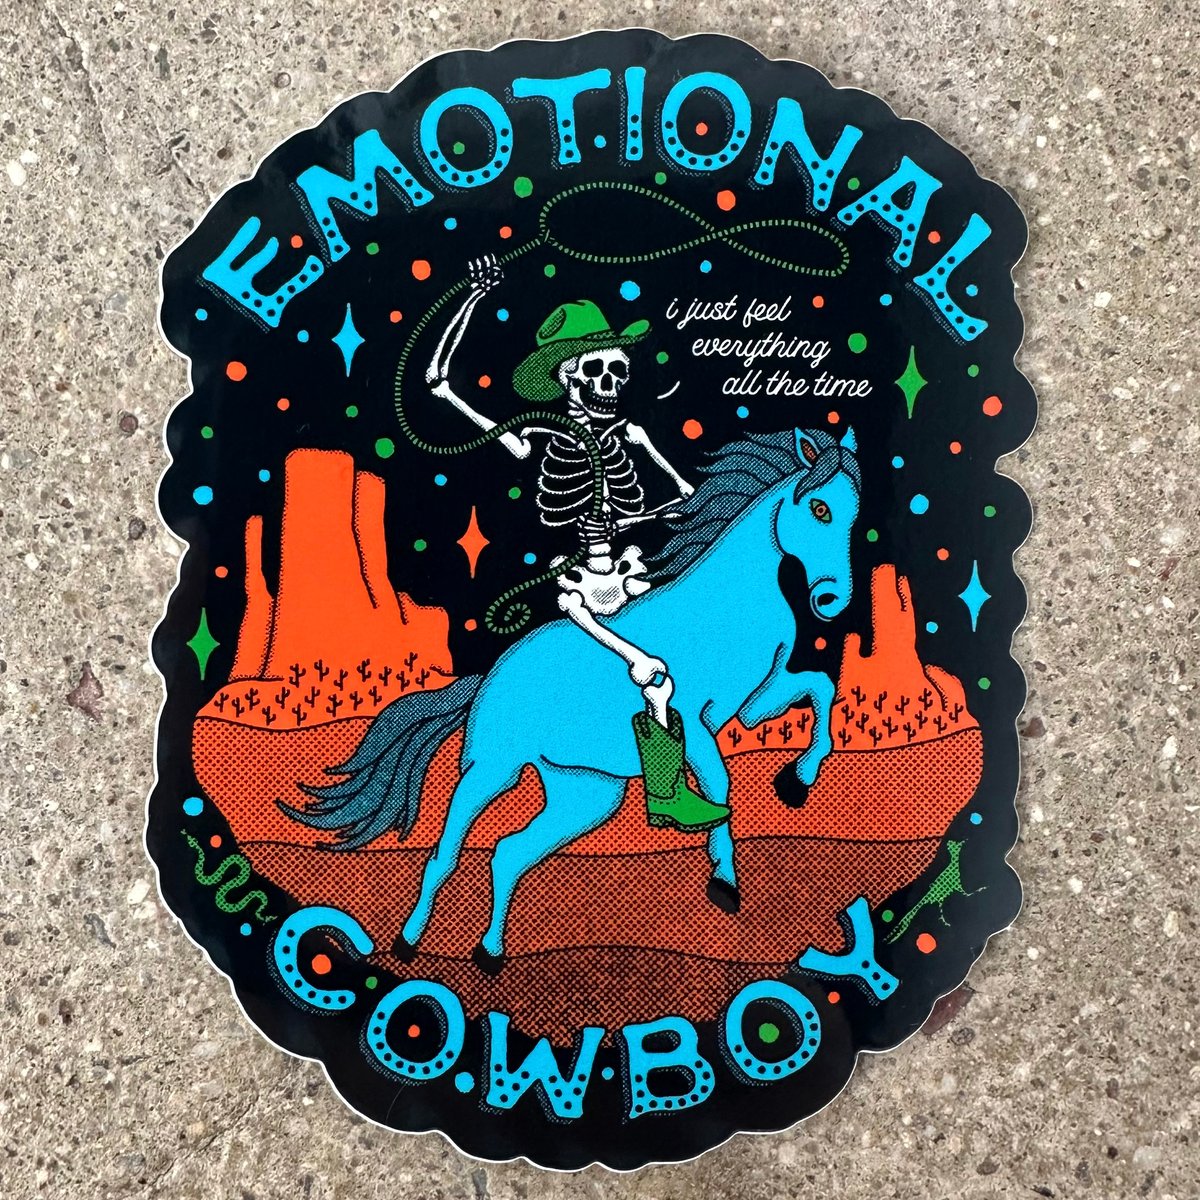 Emotional Cowboy Sticker